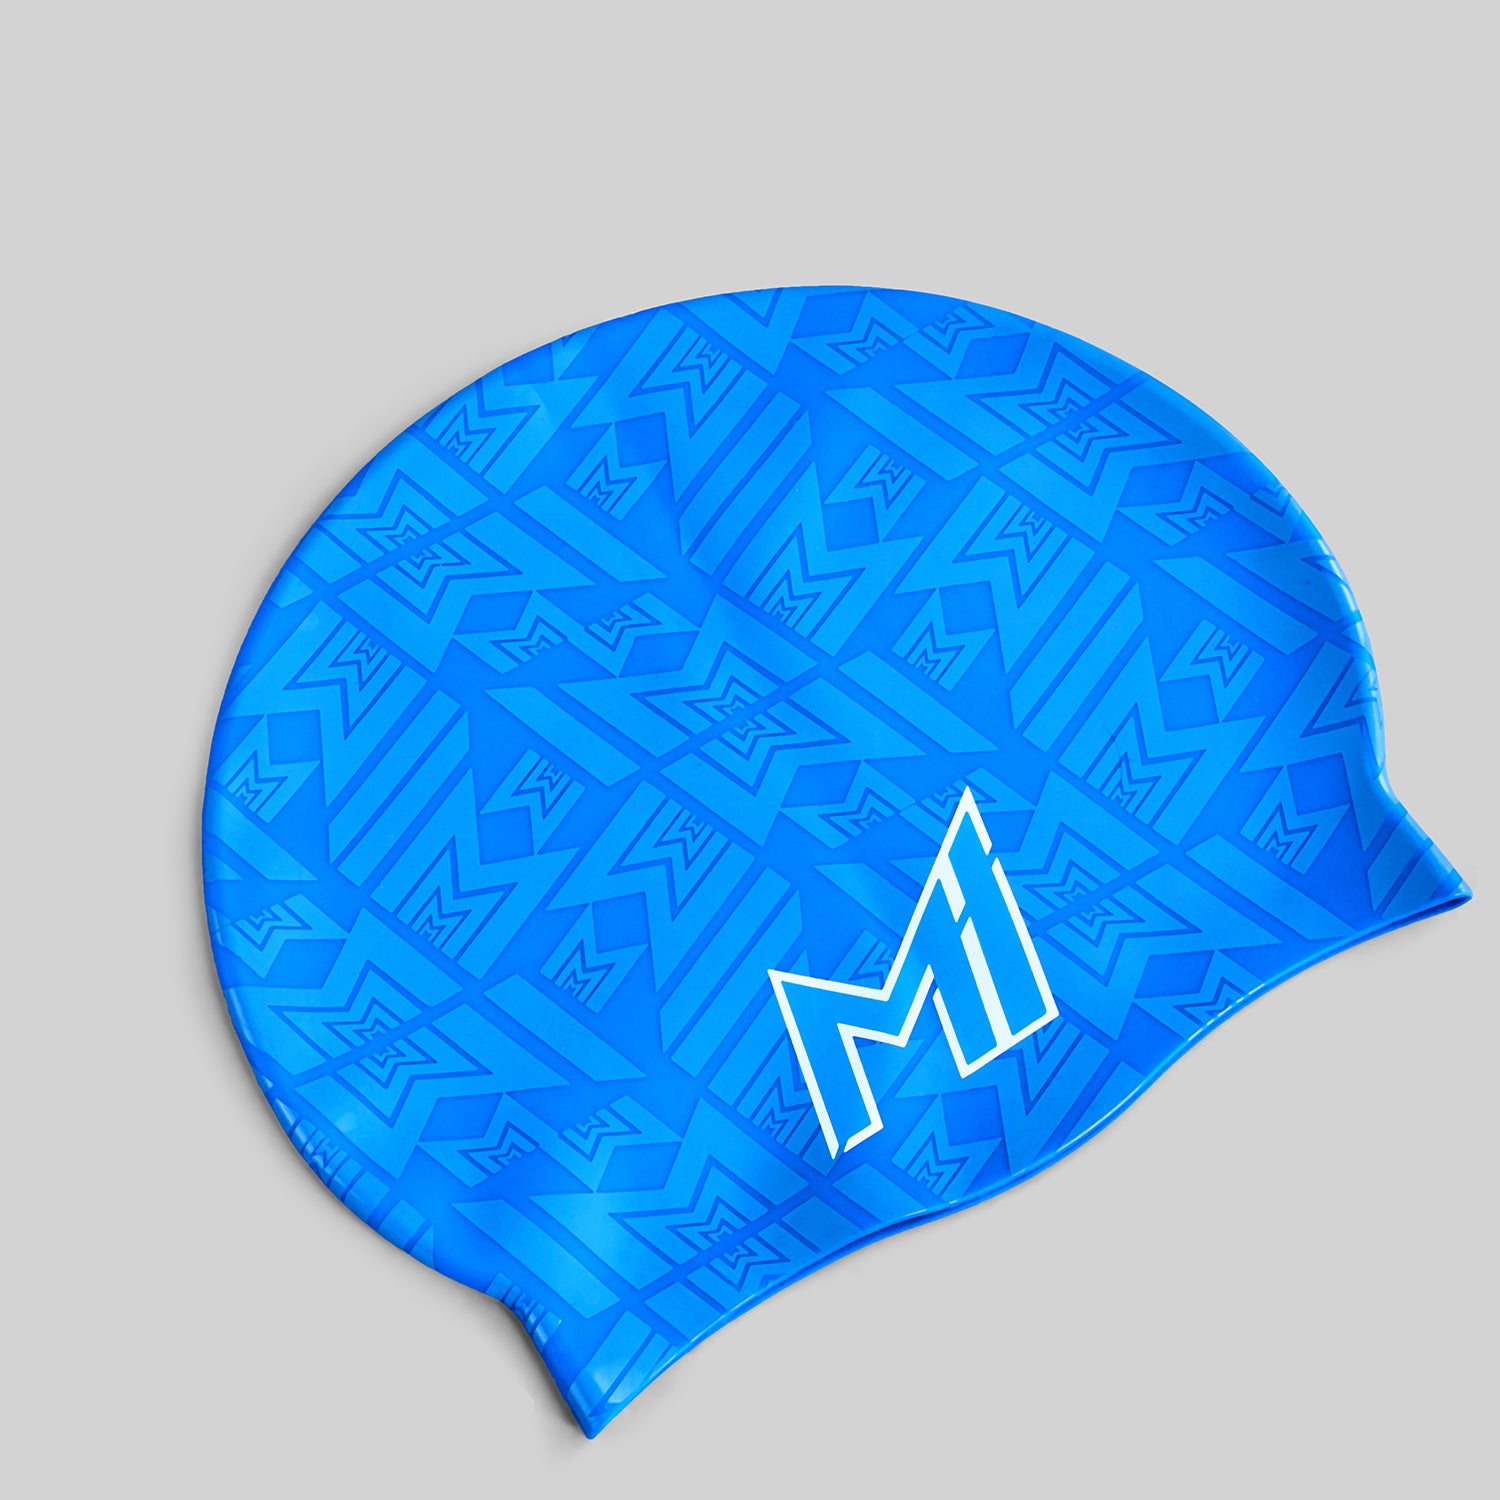 Official MI Merch - Unisex Swimming Cap